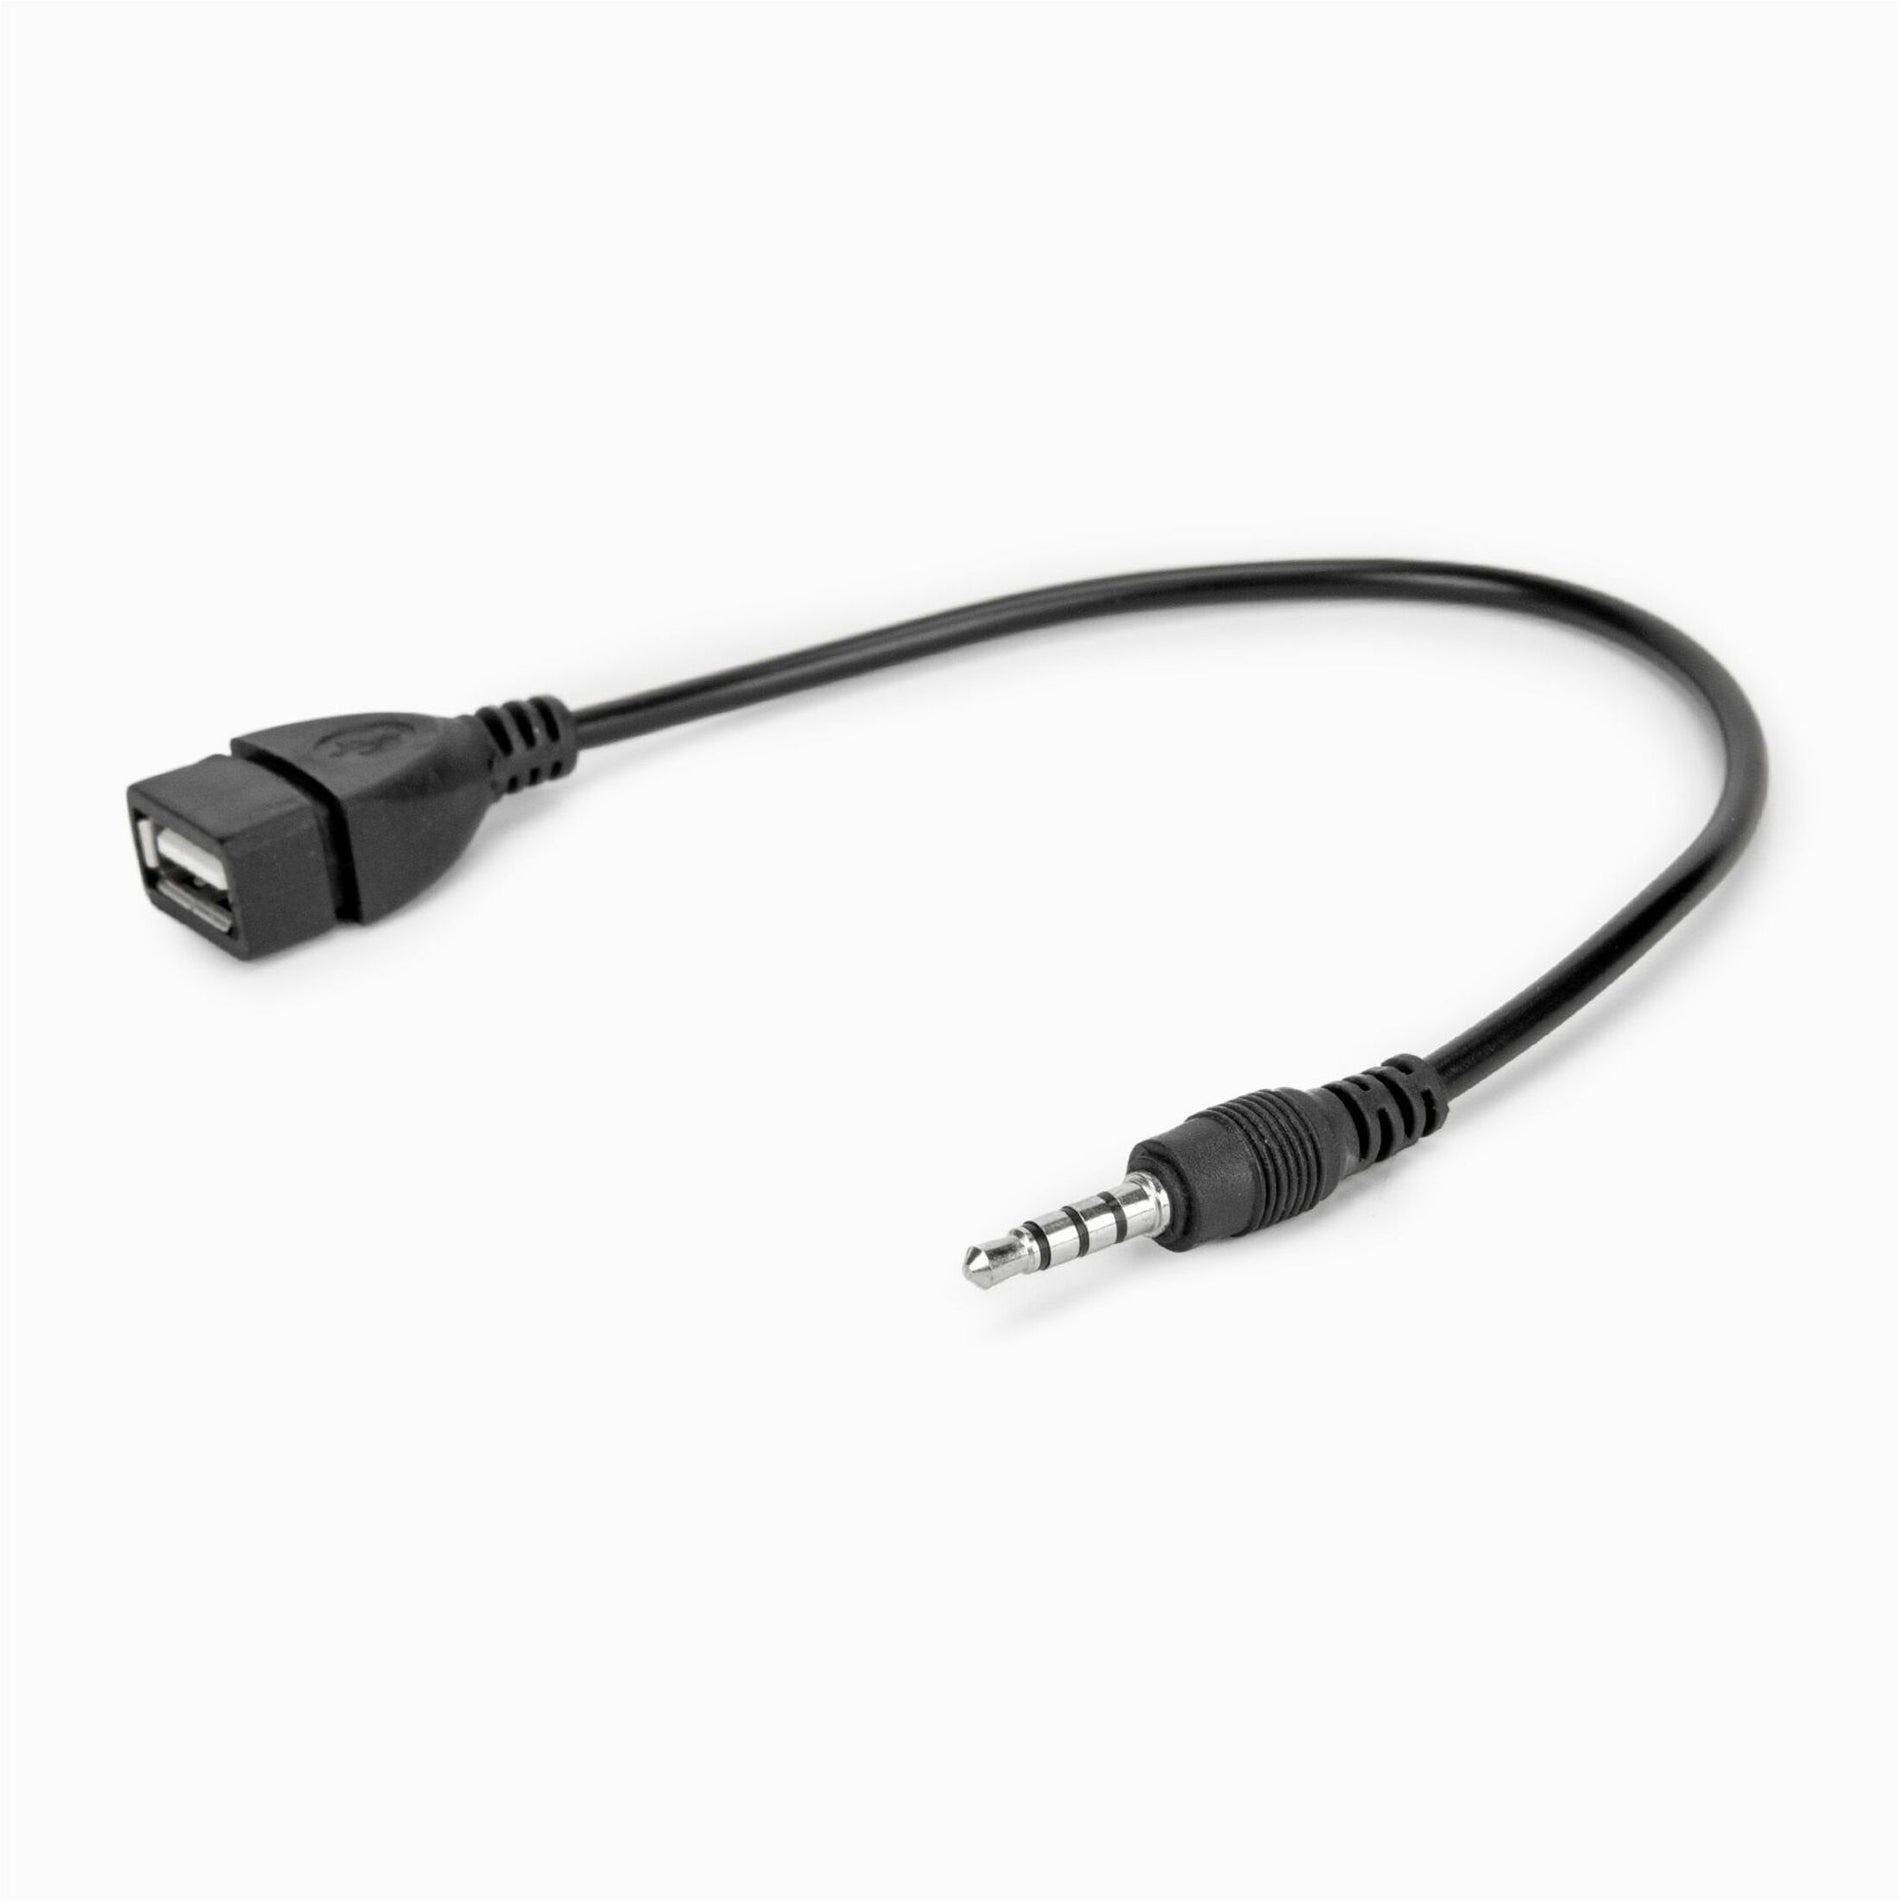 Rocstor Y10A297-B1 USB-A (Femelle) vers Adaptateur Prise Casque Audio 35 mm (Mâle) Adaptateur Audio Premium